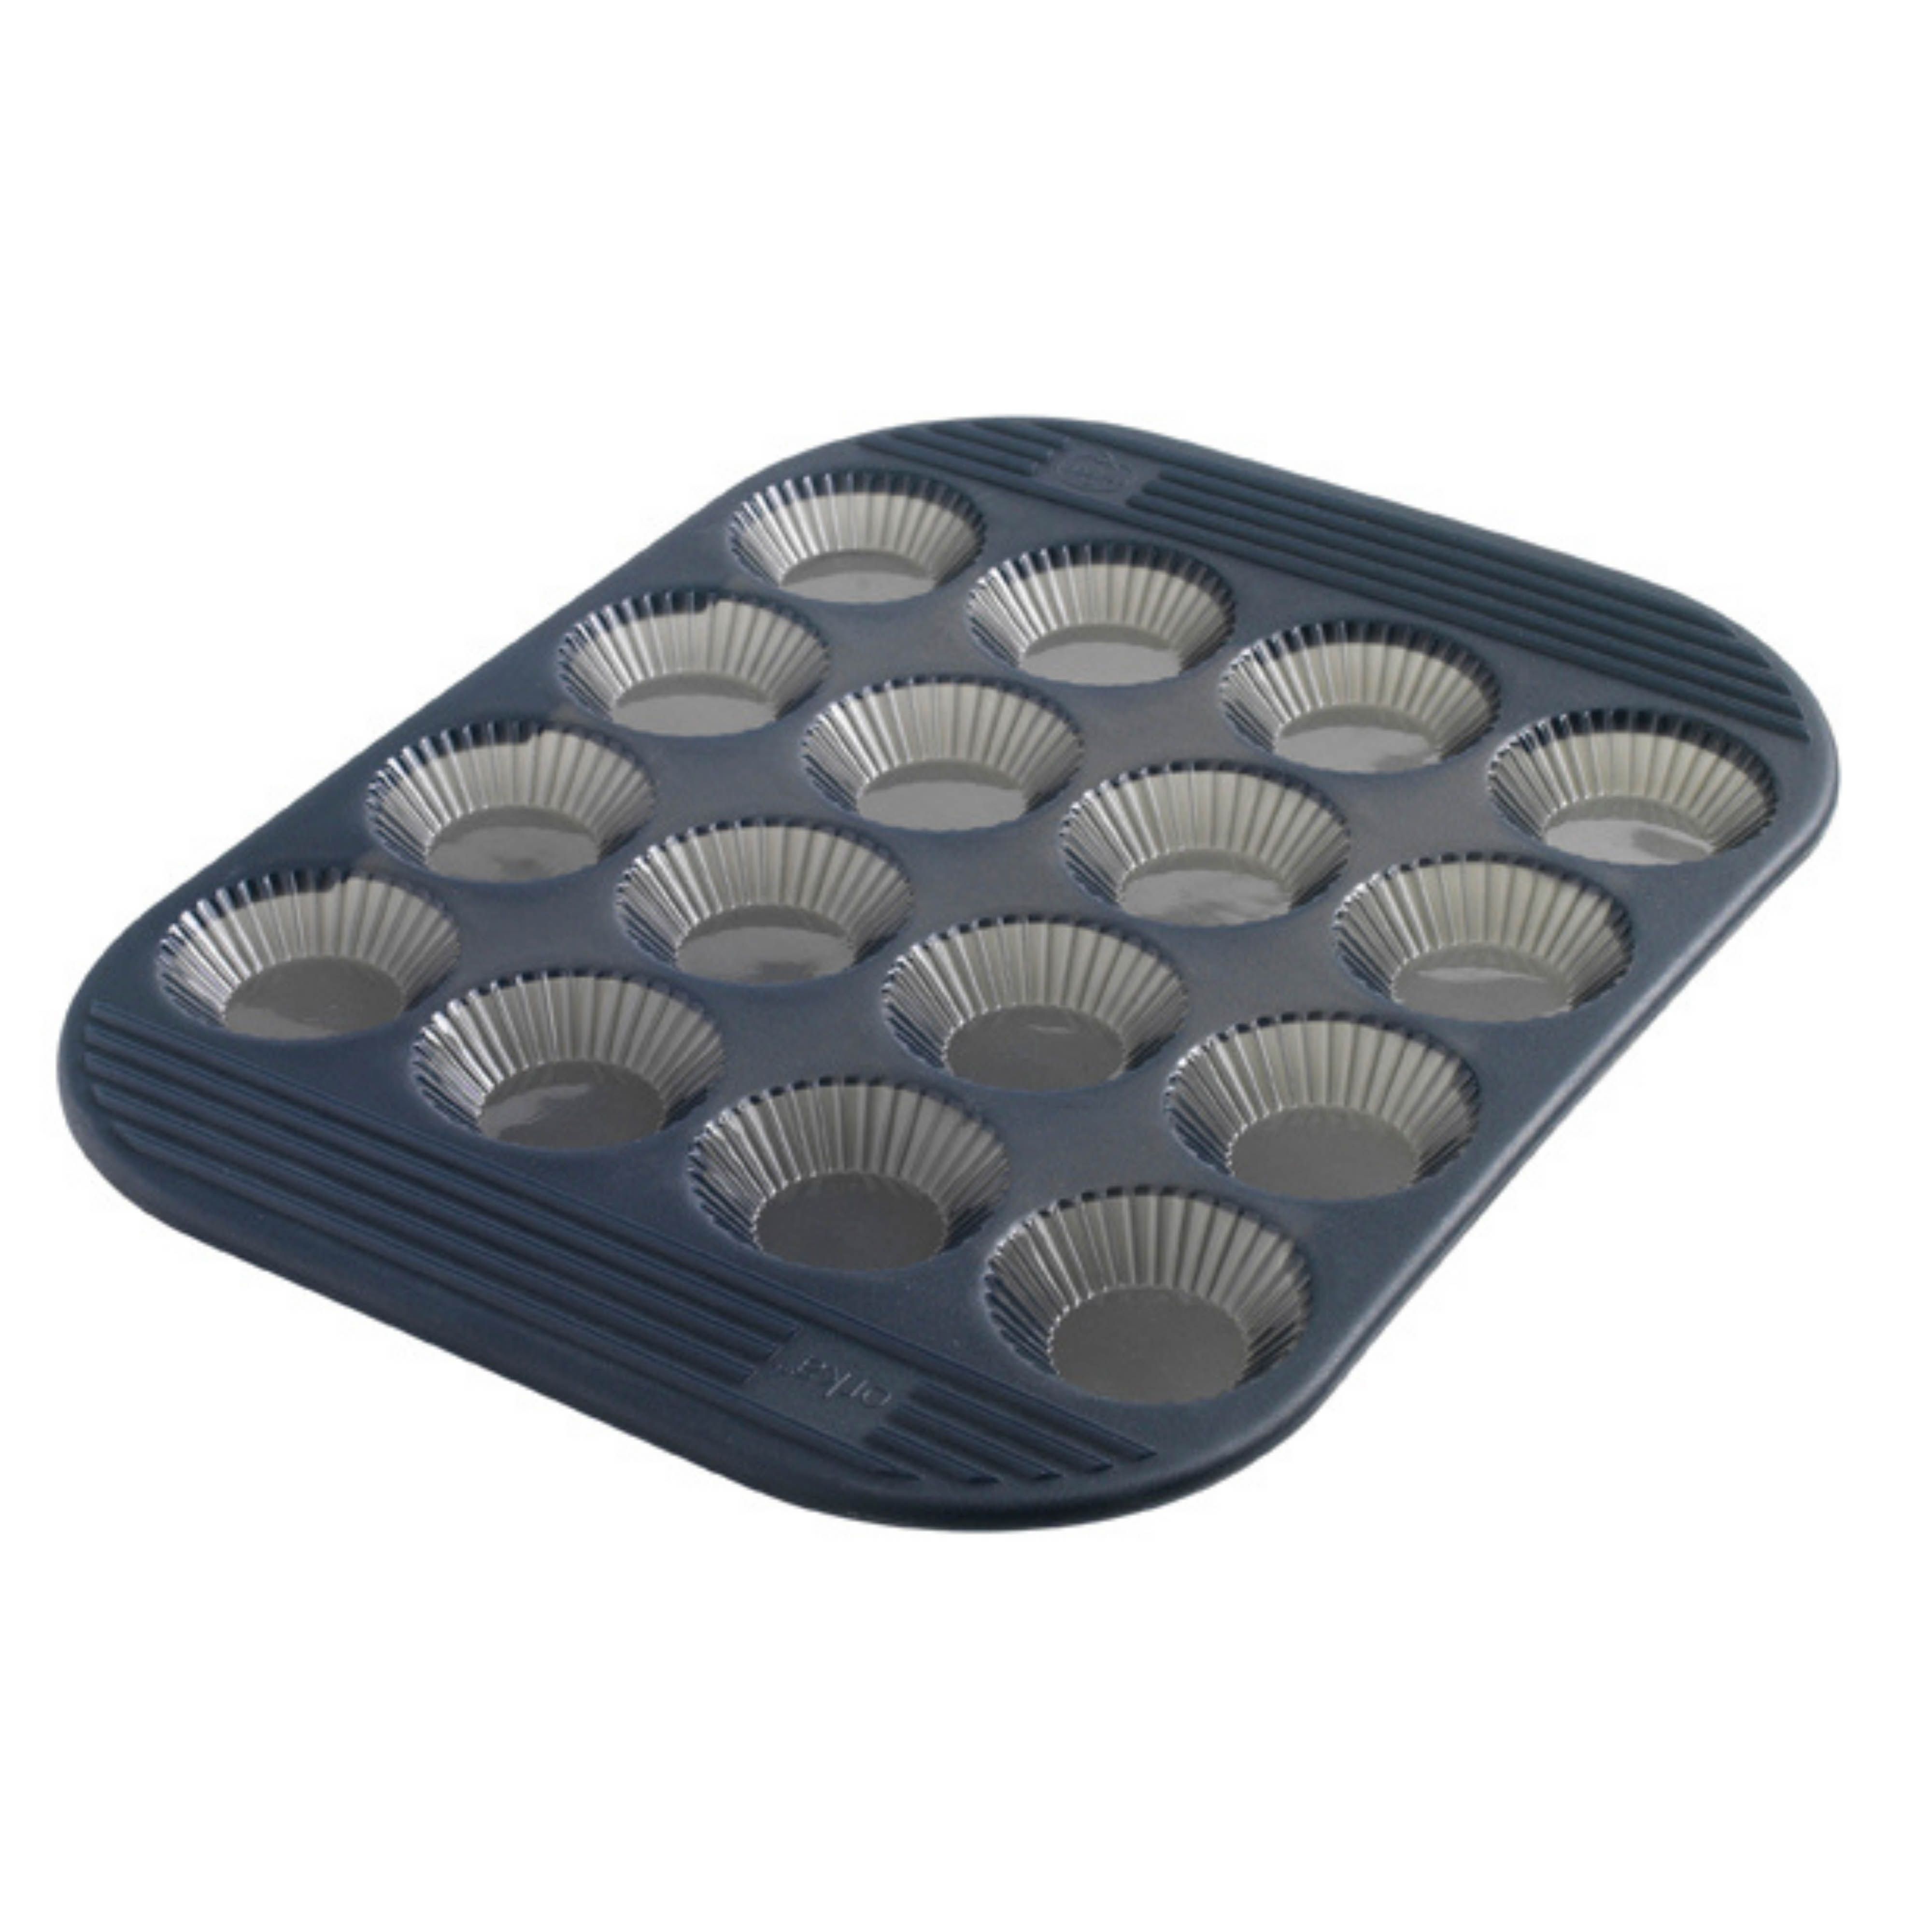 Moule pour réaliser des tartes et tartelettes circulaires, 2 formats  disponibles pour réaliser une tarte ou de mini tartelettes